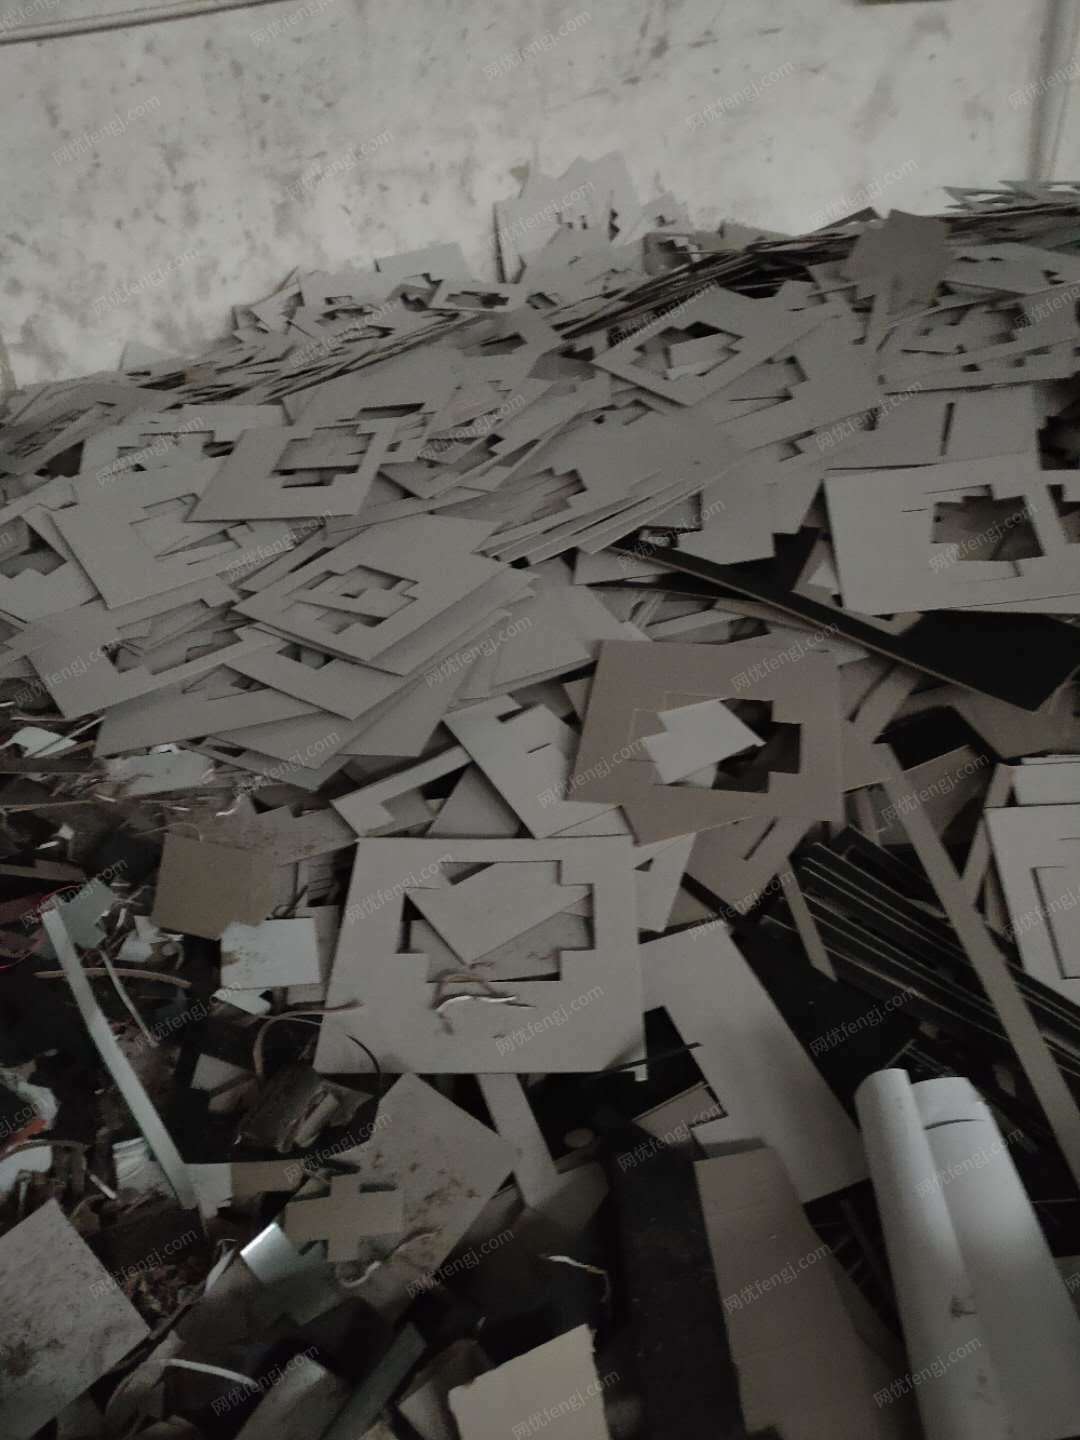 广东中山纸品包装厂出售灰板纸每月4吨，无库存。限中山市客户报价需自提。价高者得。